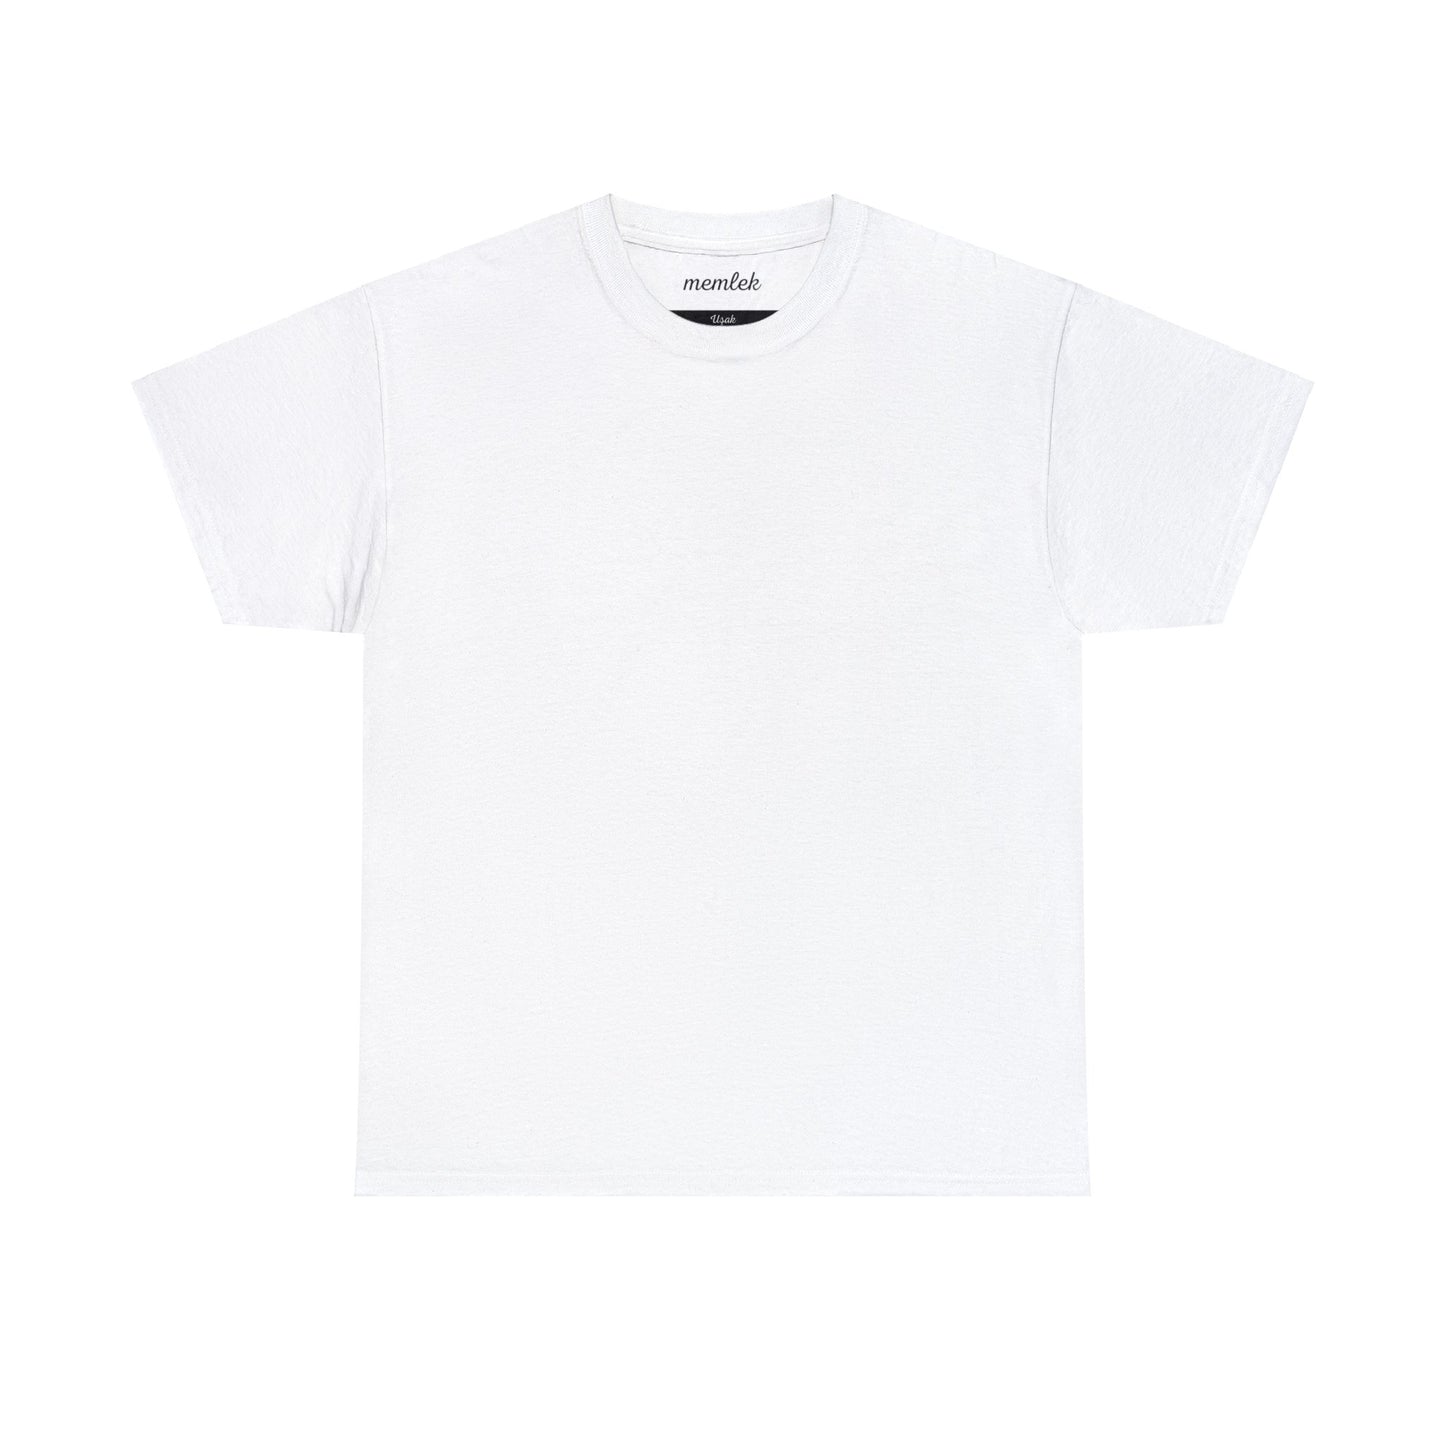 Kurt - 64 Uşak - T-Shirt - Back Print - Black/White